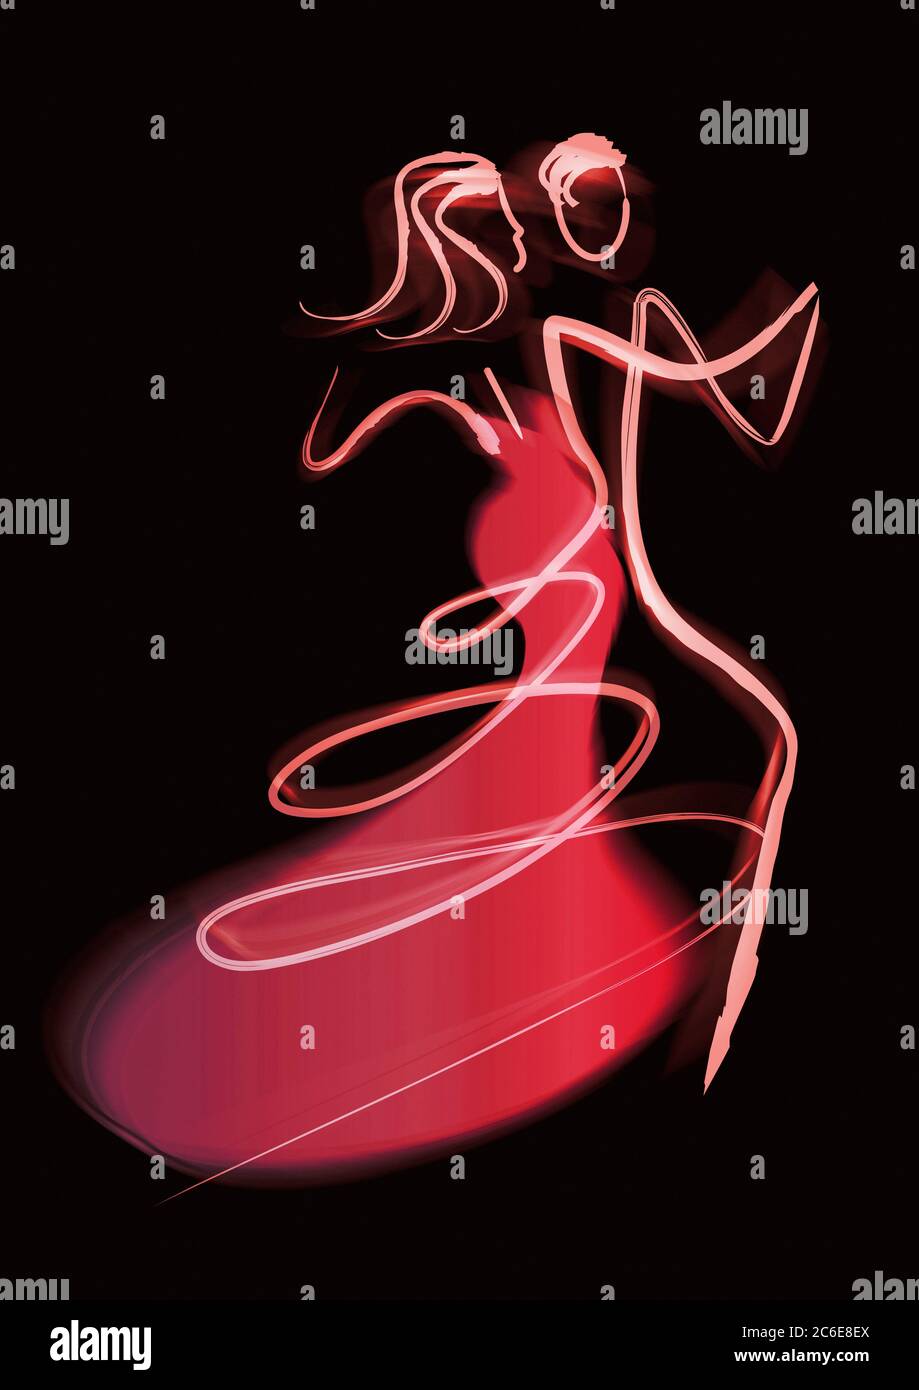 Tänzer koppeln, lineart verschwommene Silhouetten. Ausdrucksstarke stilisierte rote Illustration des Tanzes des jungen Paares. Stockfoto